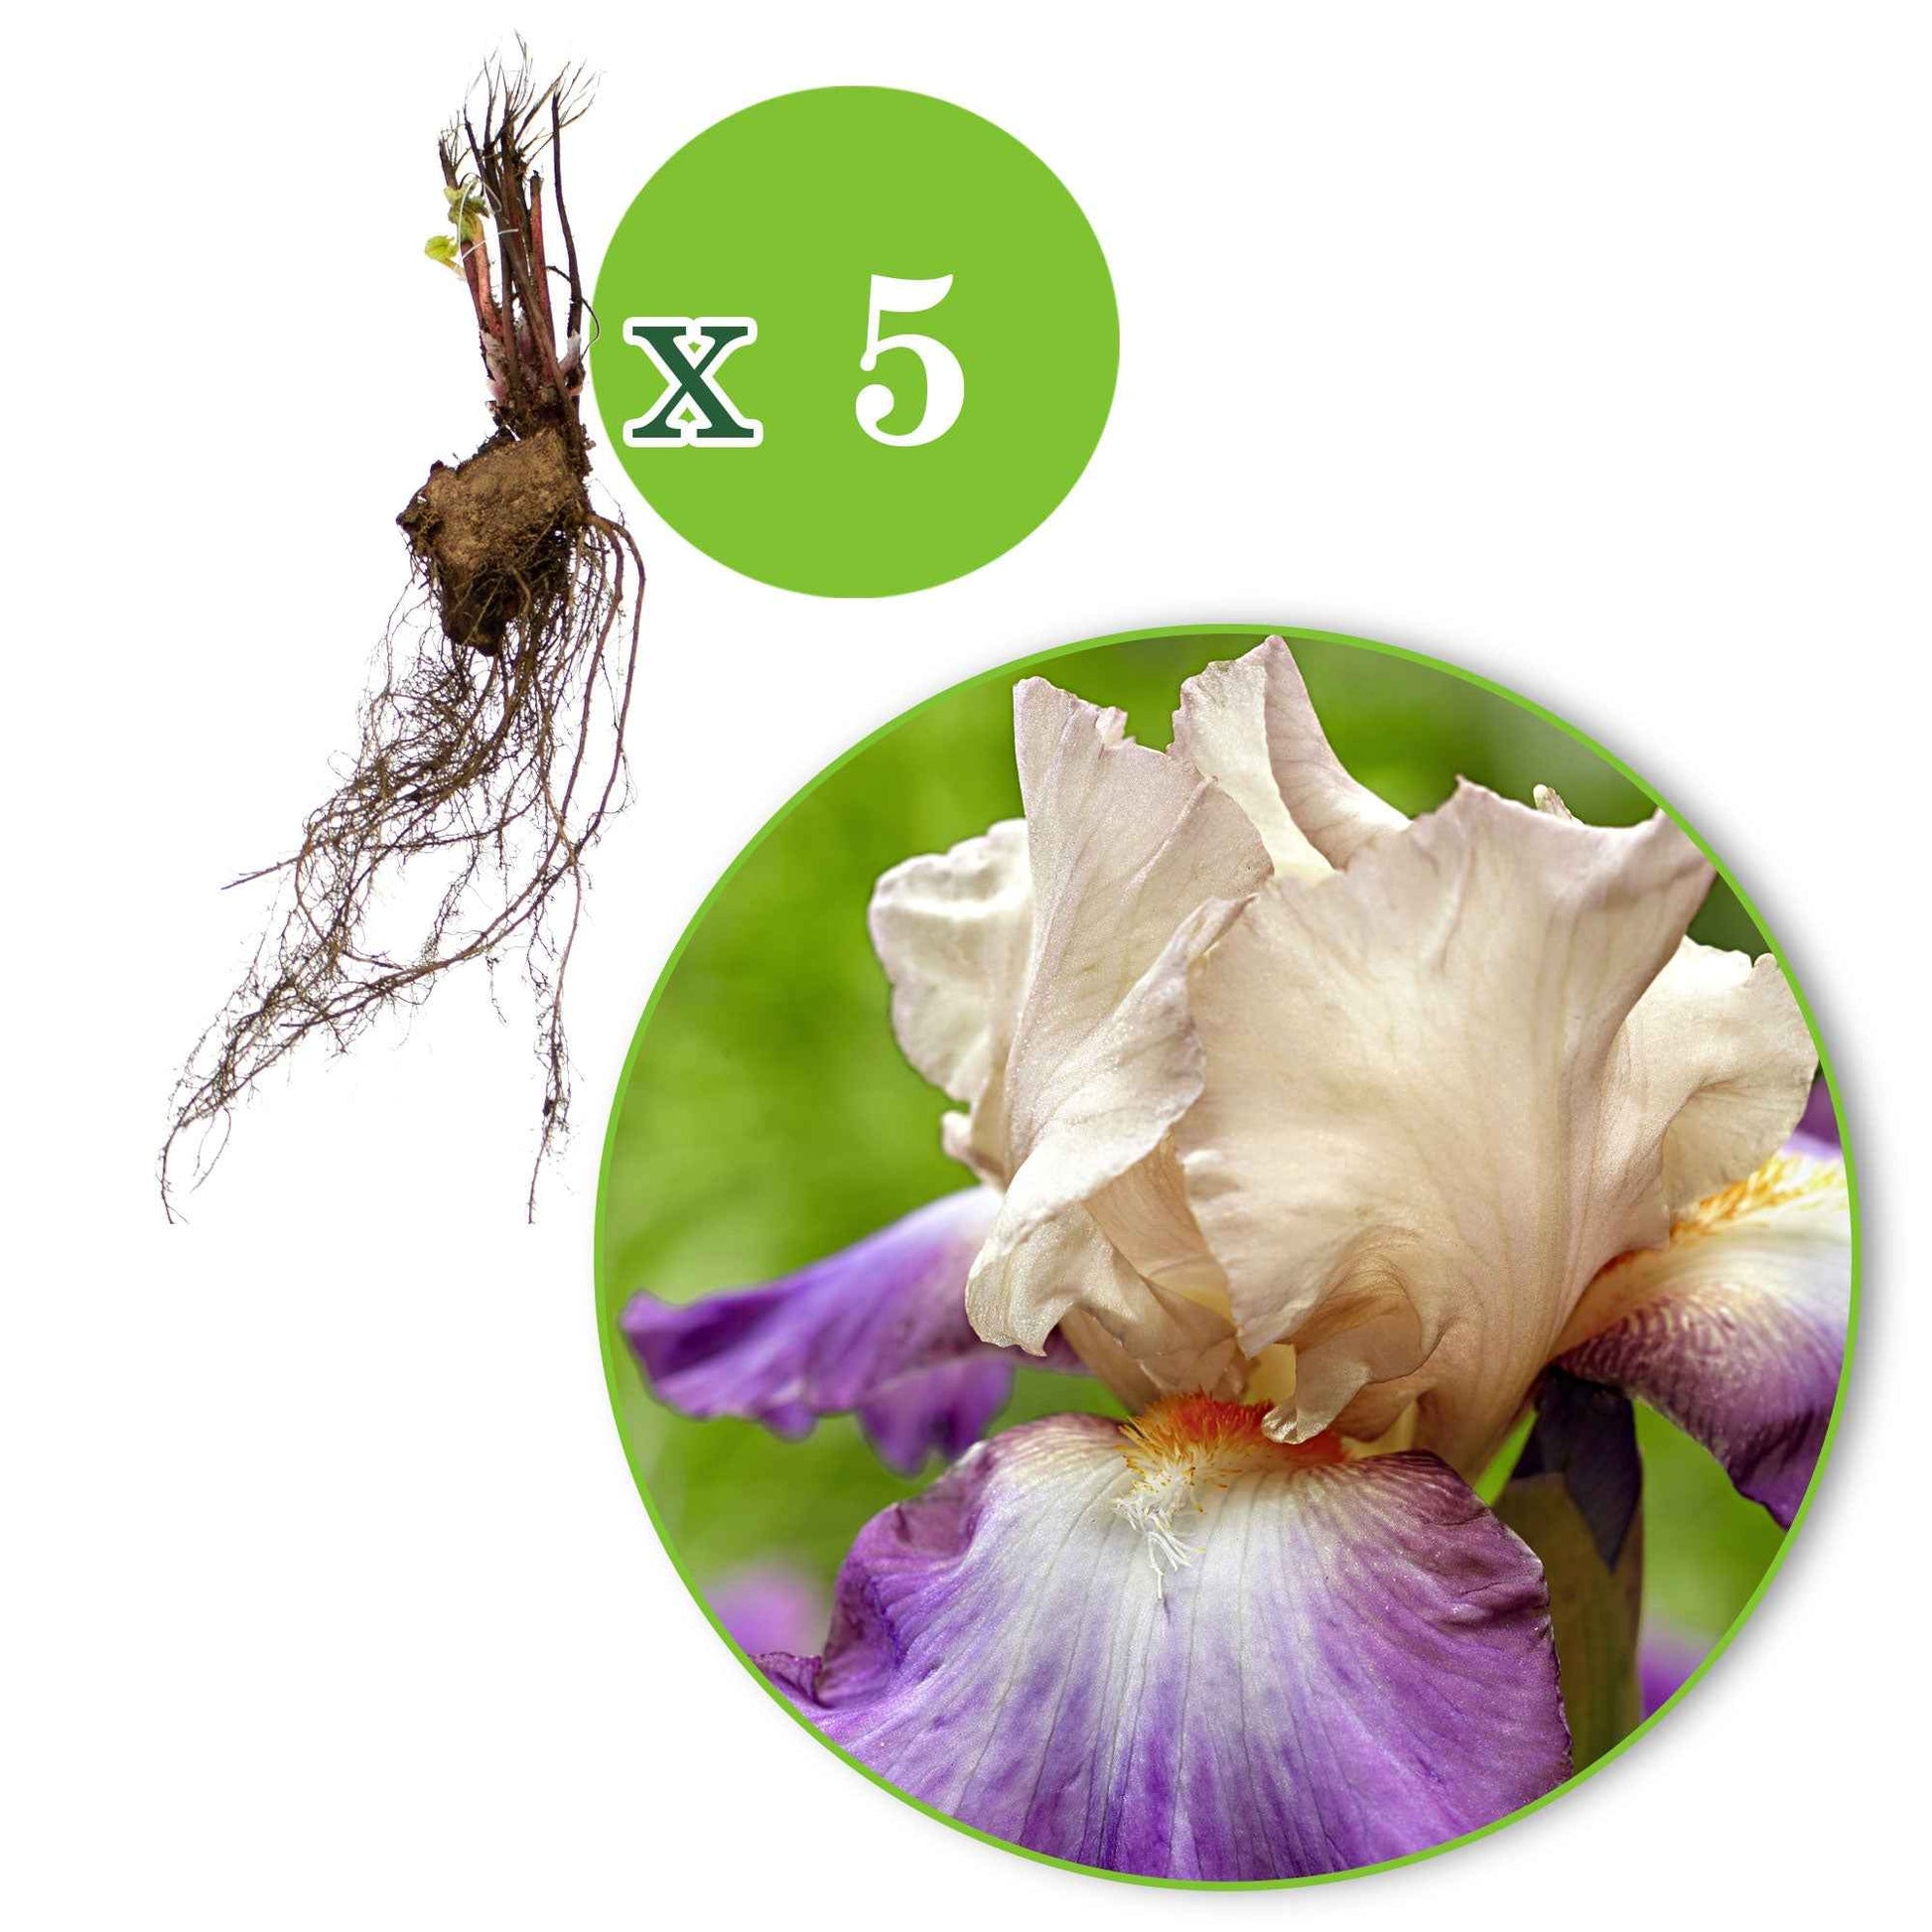 5x Winterharte Geranie 'Kora' violett-weiß – wurzelnackt - Winterhart - Bienen- und schmetterlingsfreundliche Pflanzen